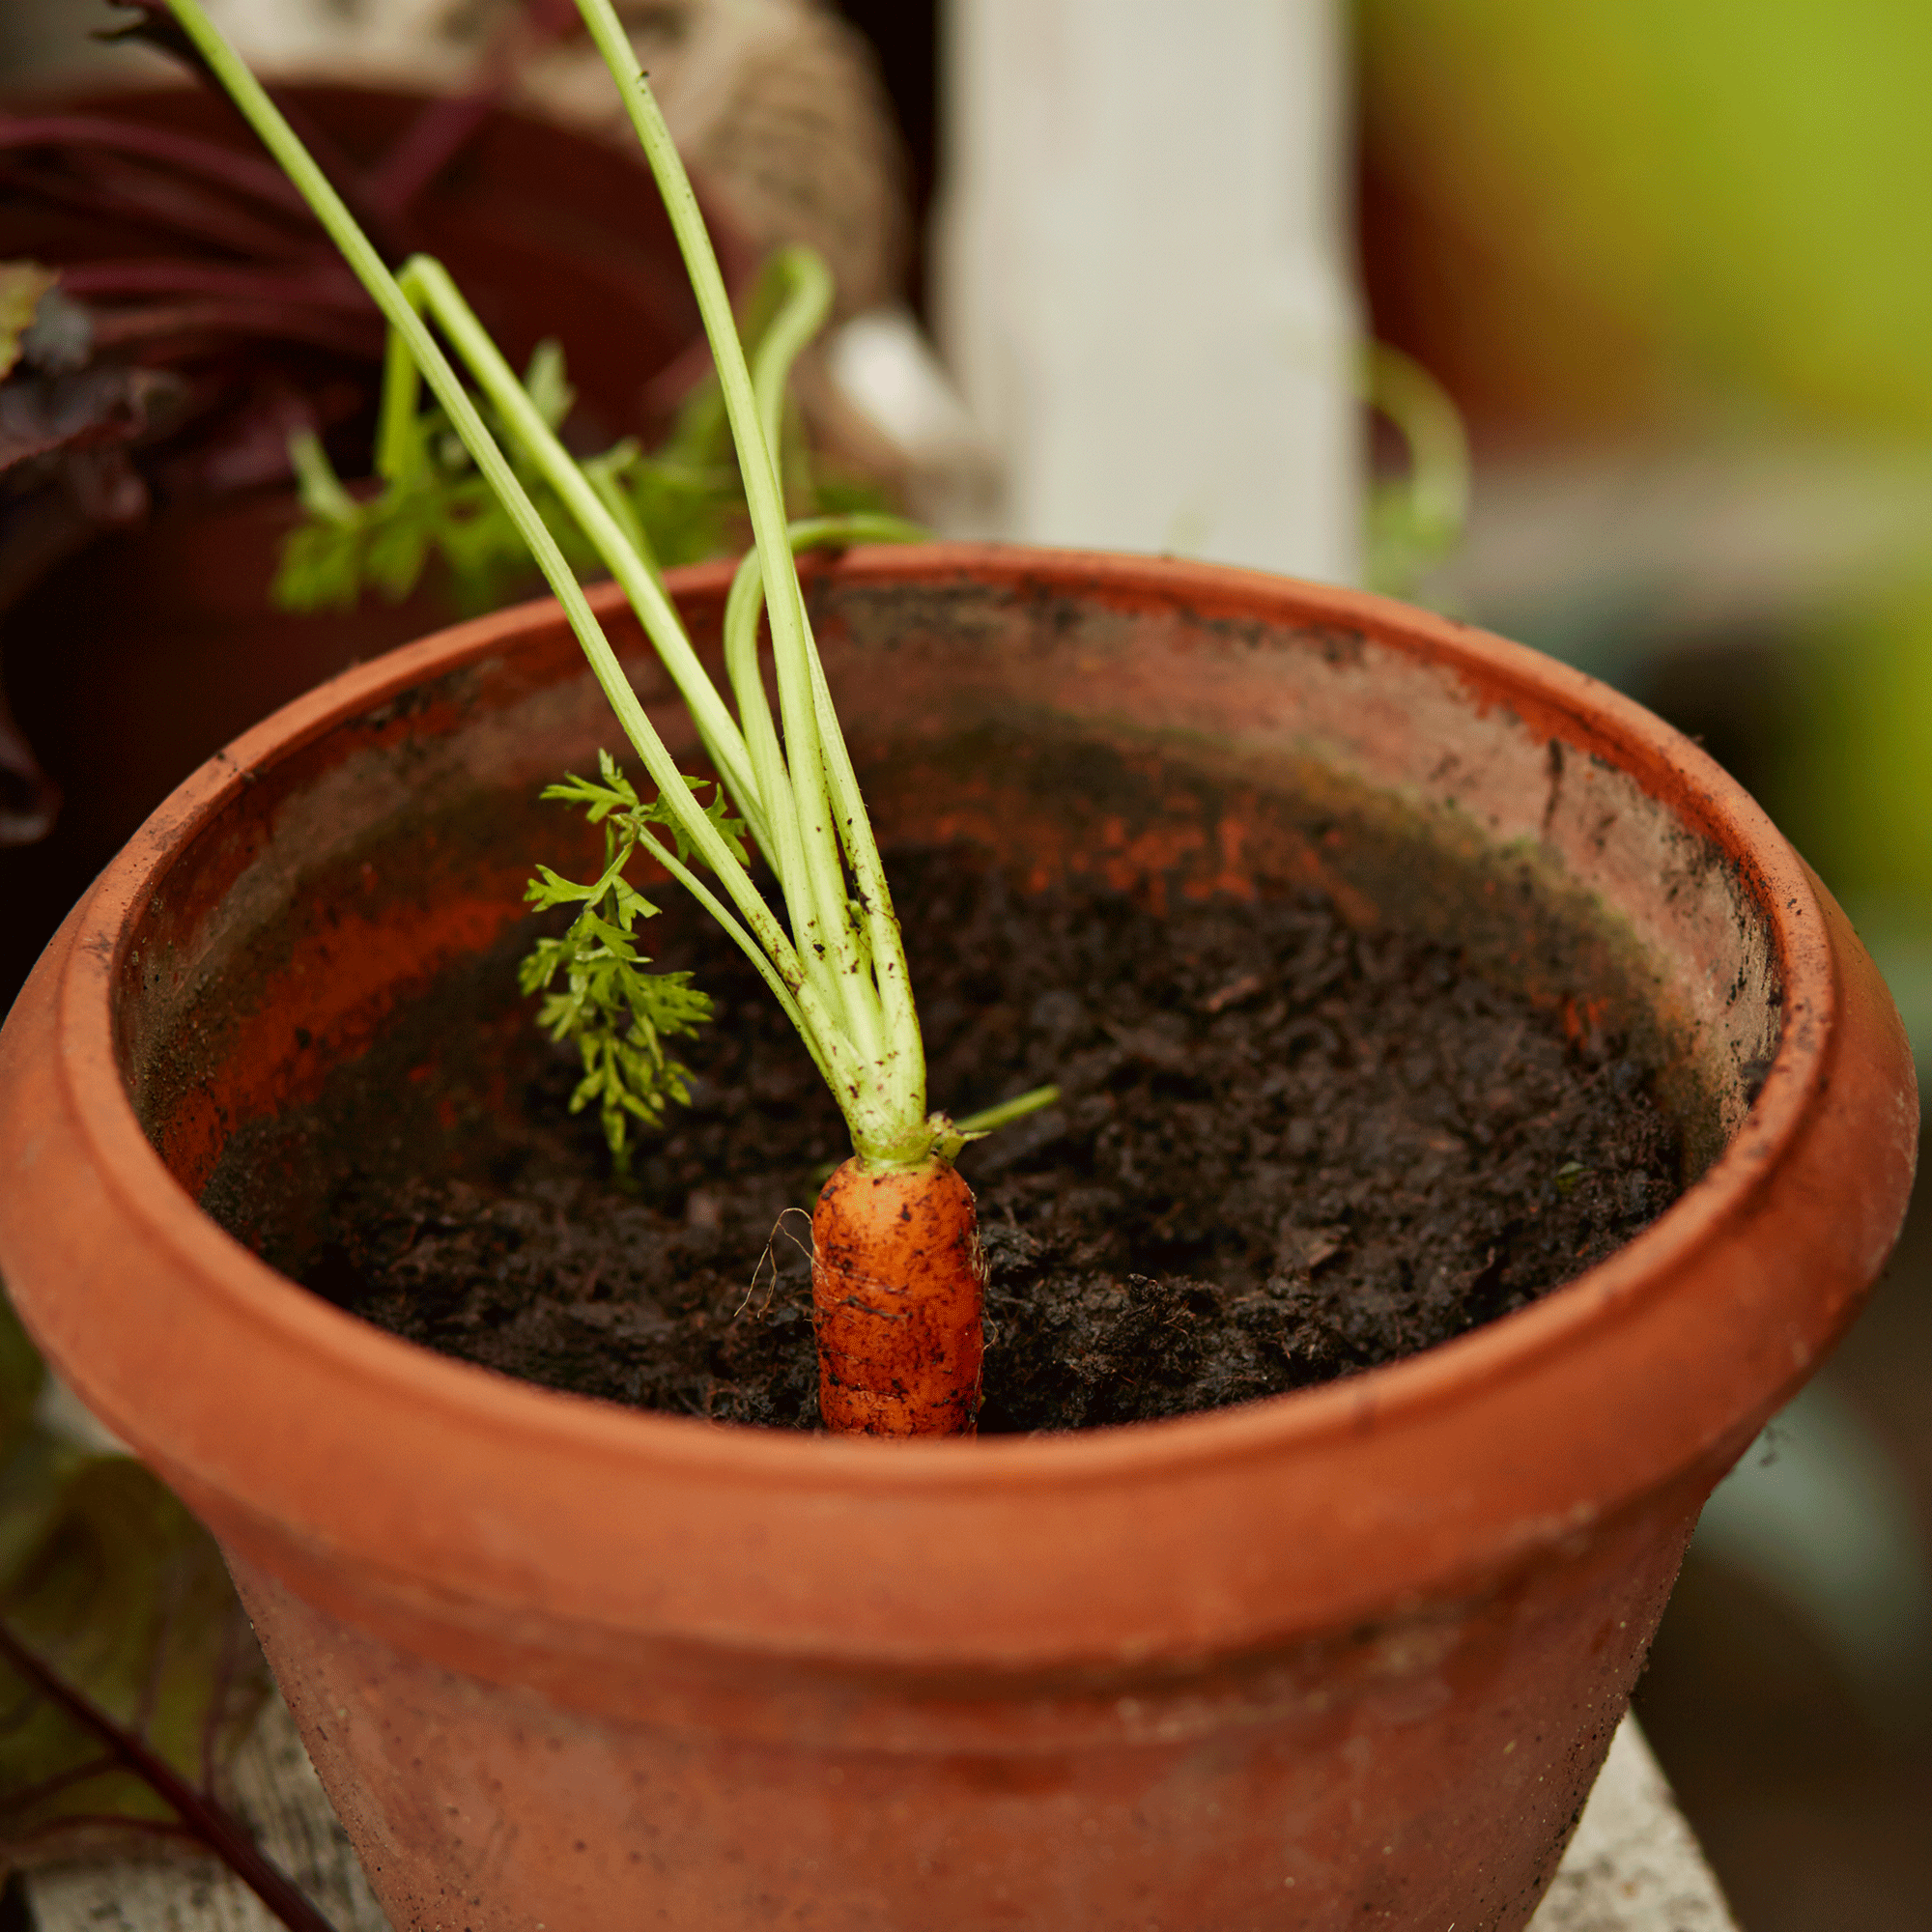 Carrots growing in pots